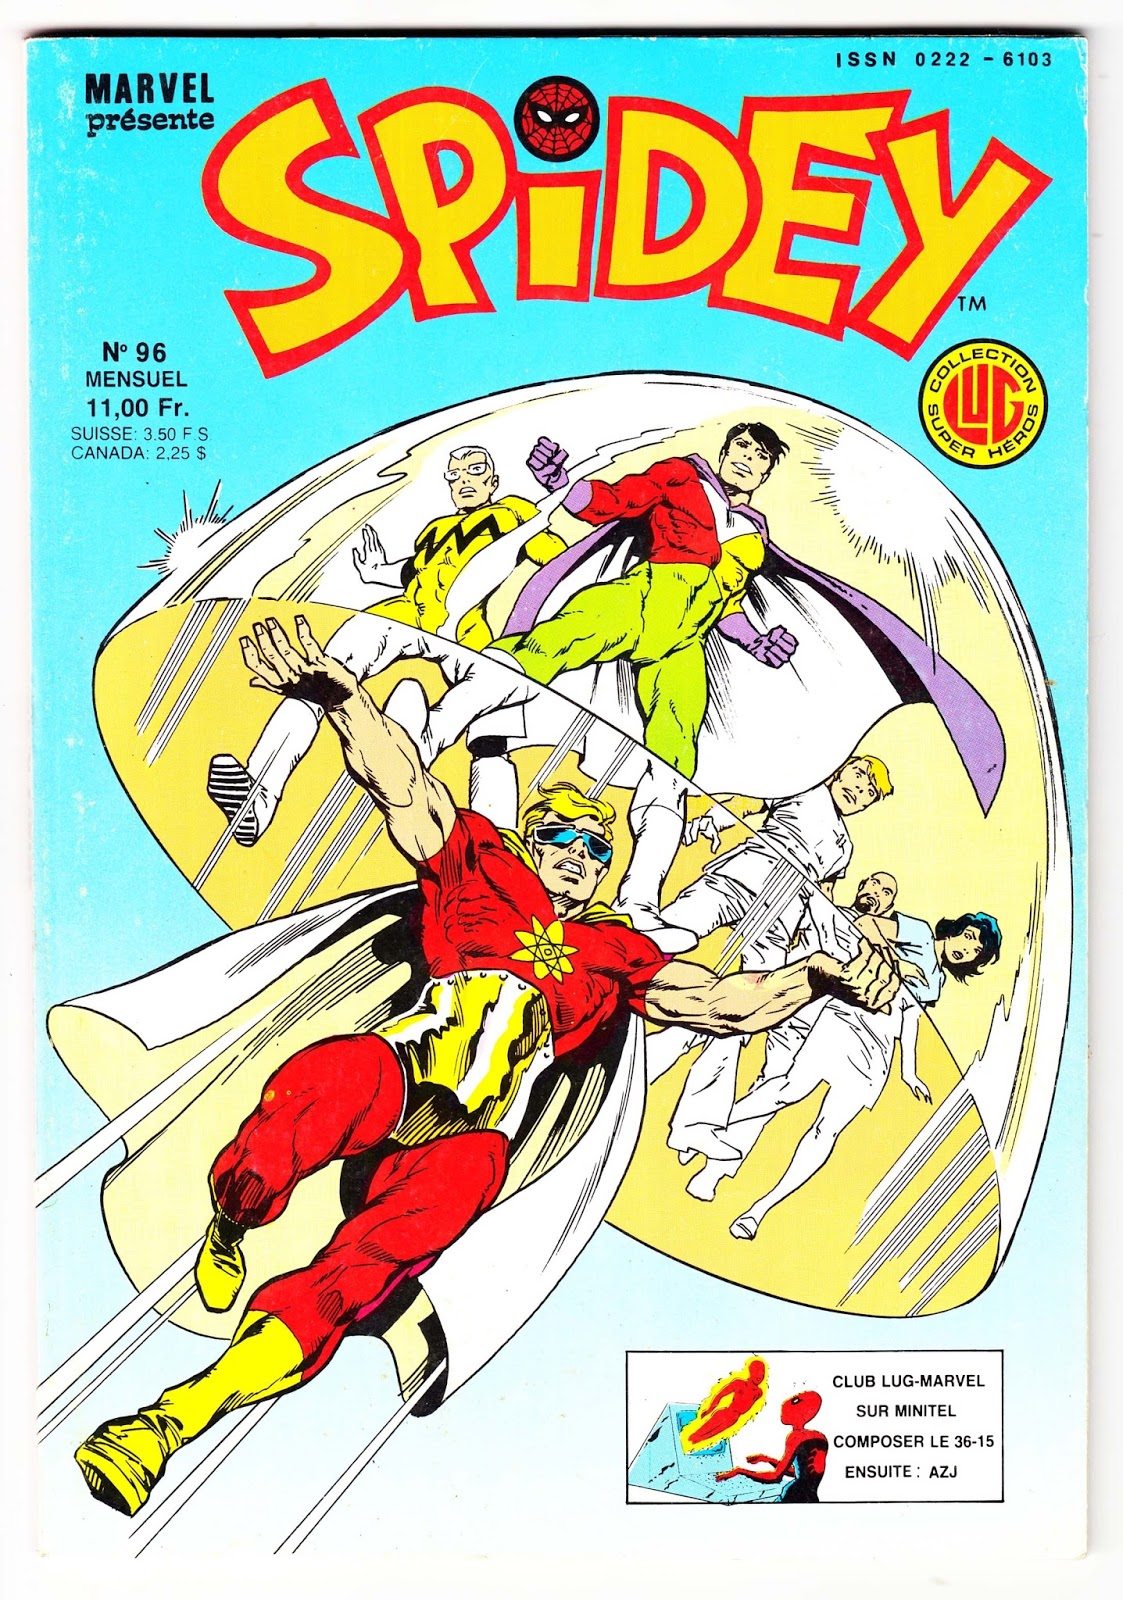 17 - Les comics que vous lisez en ce moment - Page 4 Spidey-n-96-comics-marvel